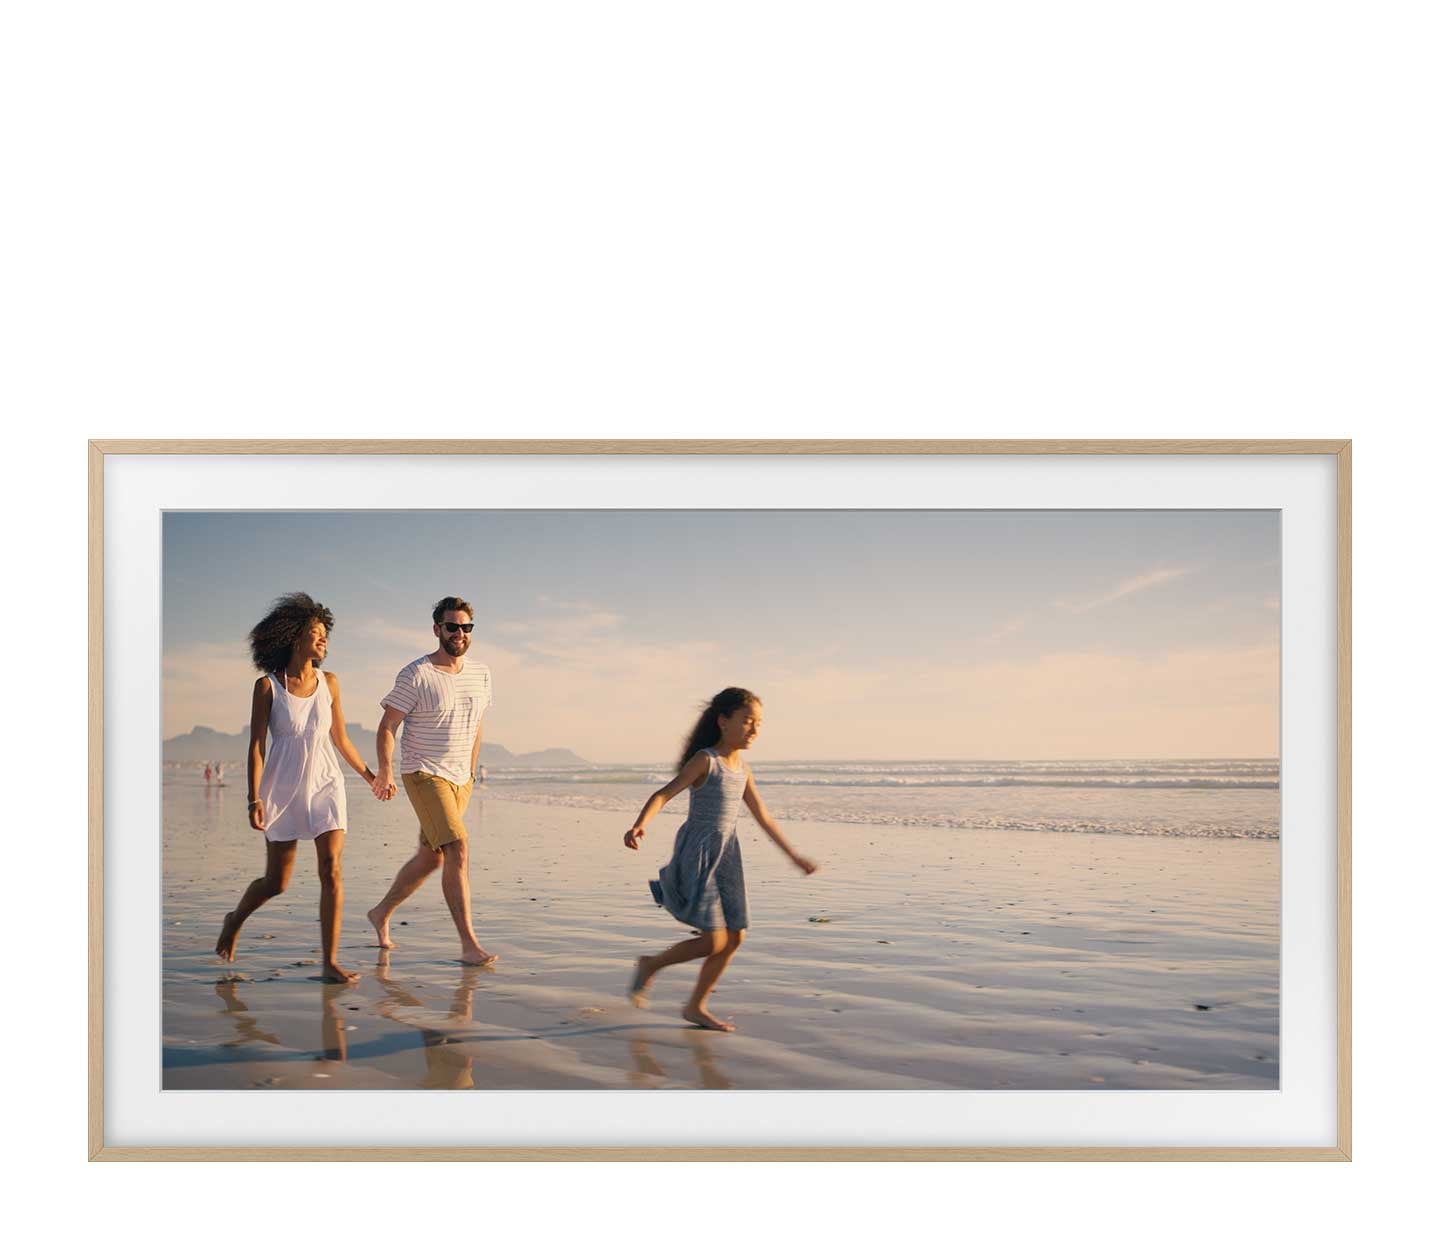 Egy család van a tengerparton. A keret egy fényképet jelenít meg erről az emlékezetes pillanatról